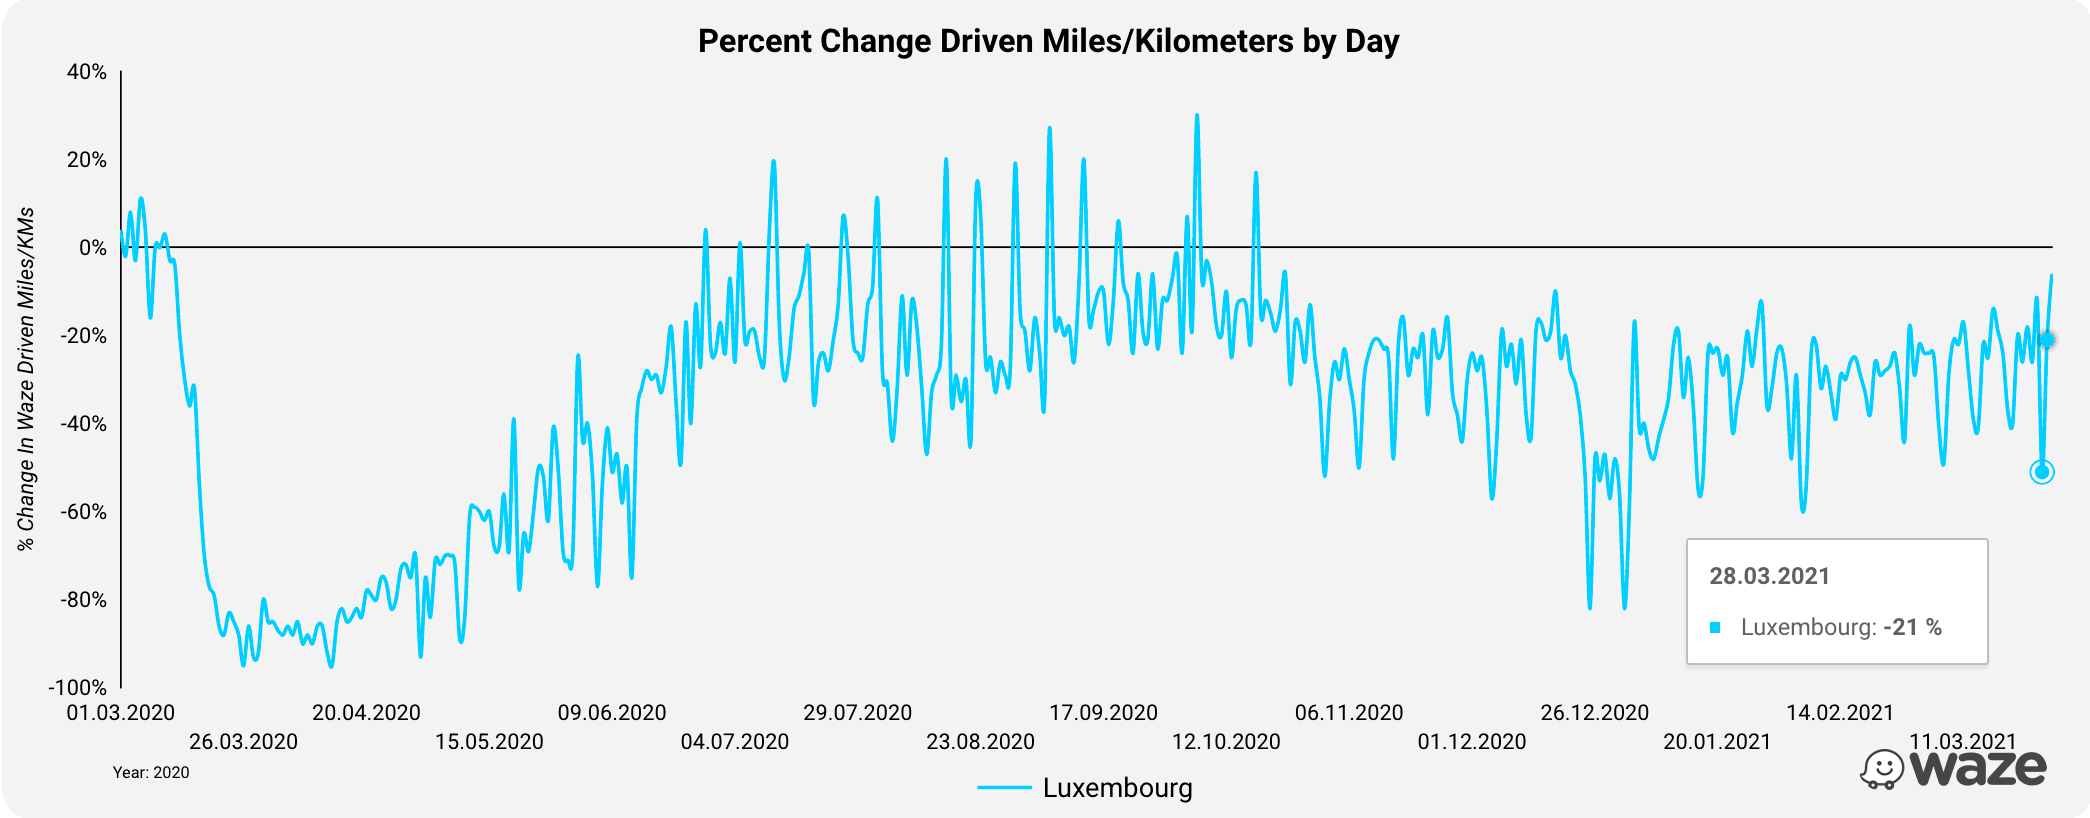 Selon les données de Waze, le nombre de kilomètres parcourus au Luxembourg a diminué en moyenne de 25% au mois de mars cette année. (Graphique: Waze)